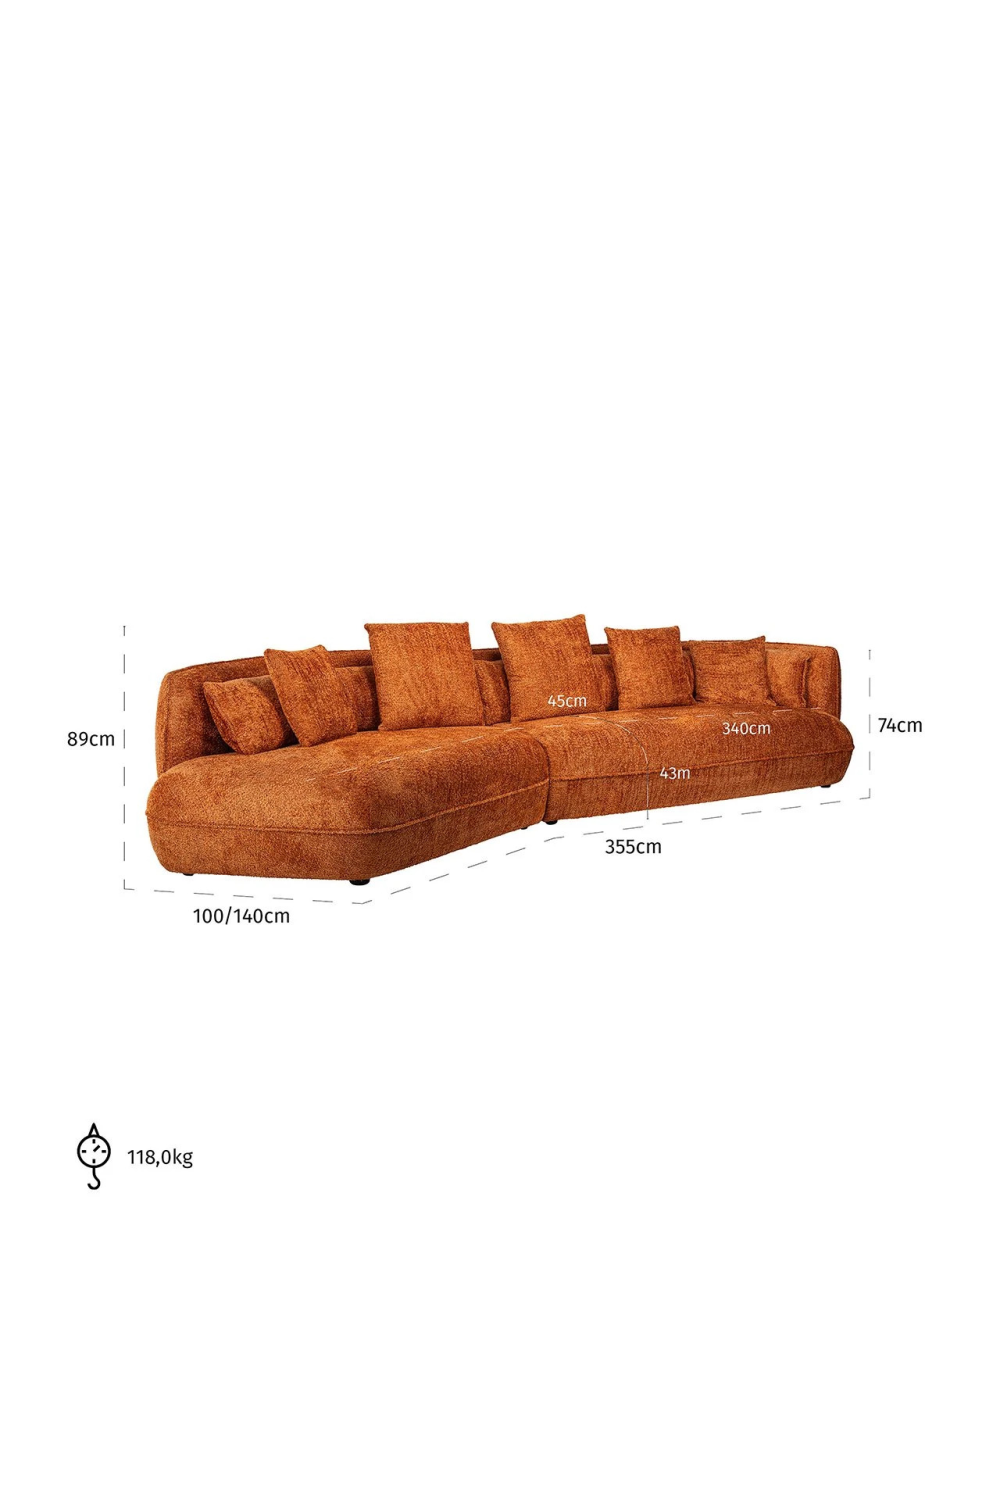 Modern Minimalist Sofa | OROA Rodina | Oroa.com